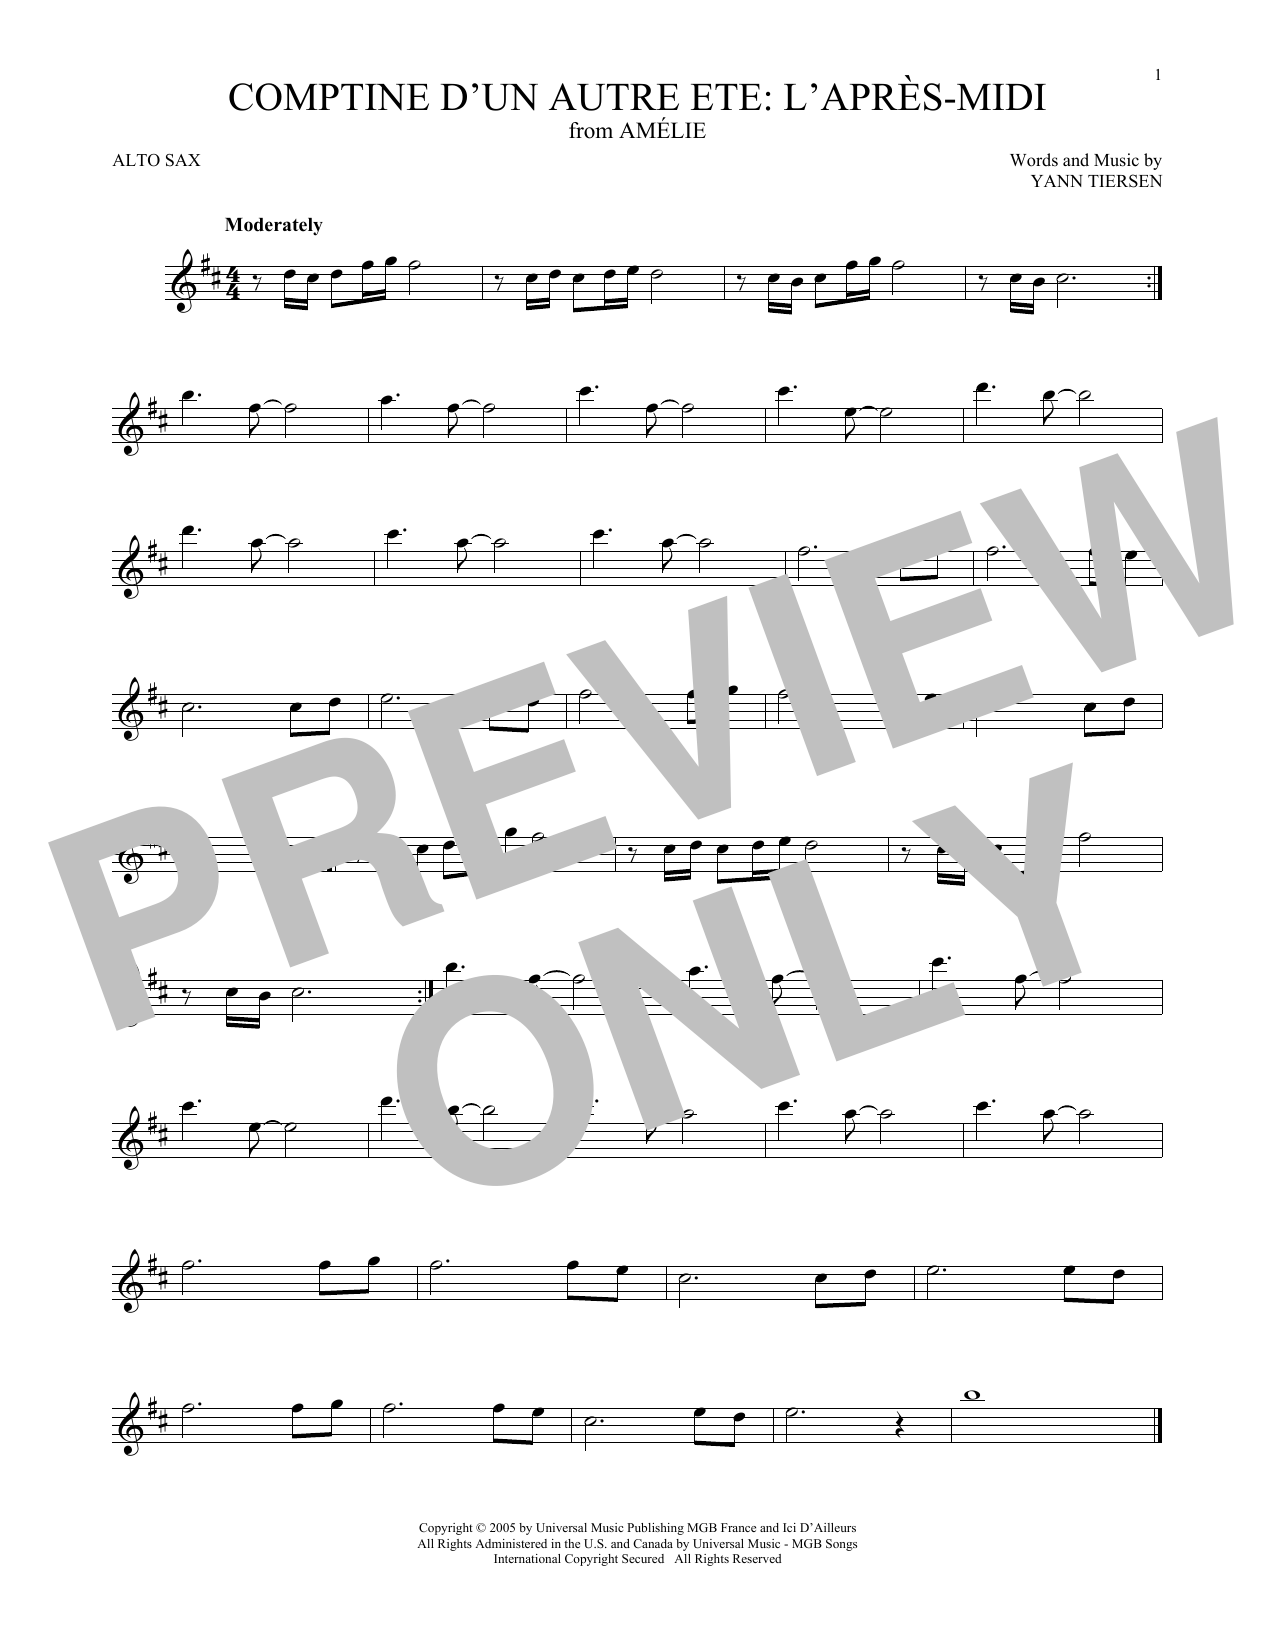 Yann Tiersen Comptine d'un autre été: L'après-midi (from Amelie) sheet music notes and chords arranged for Trombone Solo